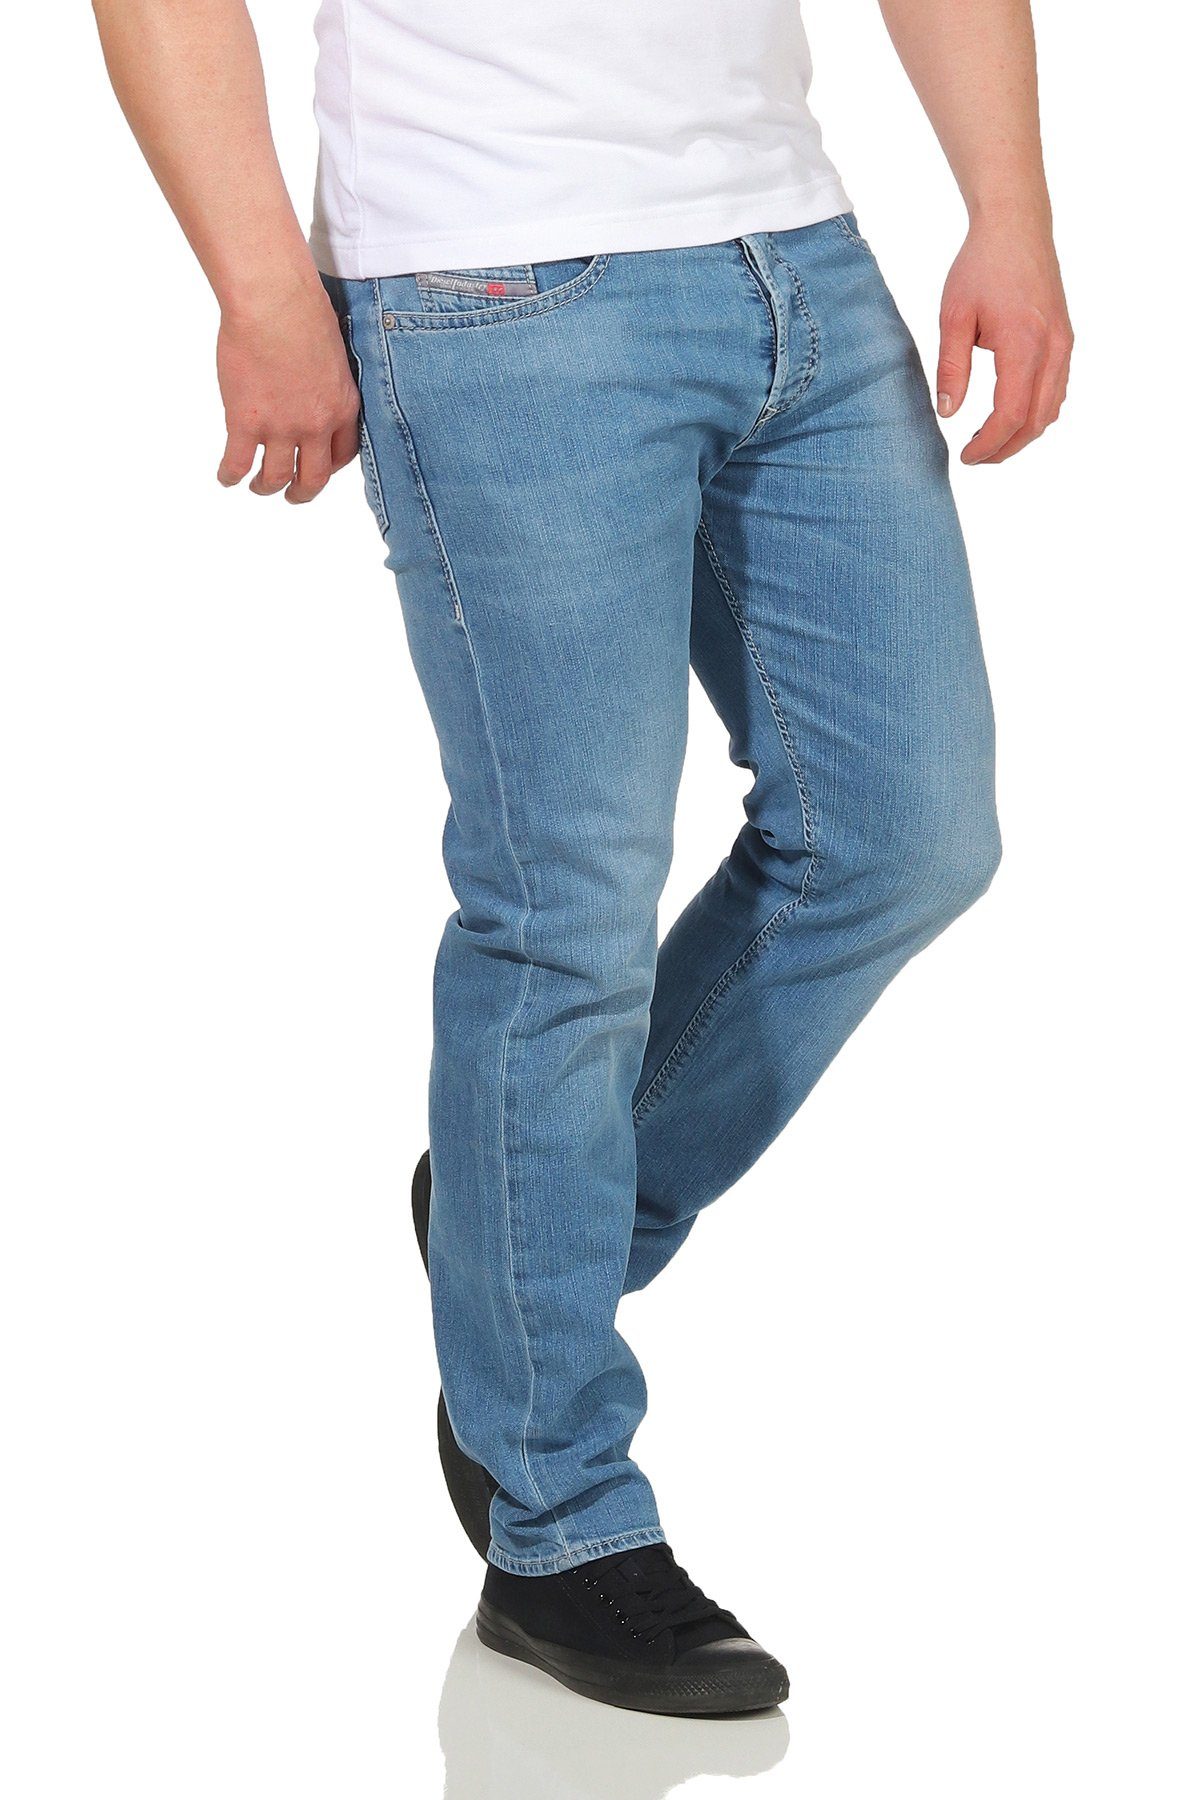 Used-Look Stretch, Buster Tapered, Diesel 084QN Diesel Hellblau, Herren 5-Pocket-Style, Jeans Regular-fit-Jeans